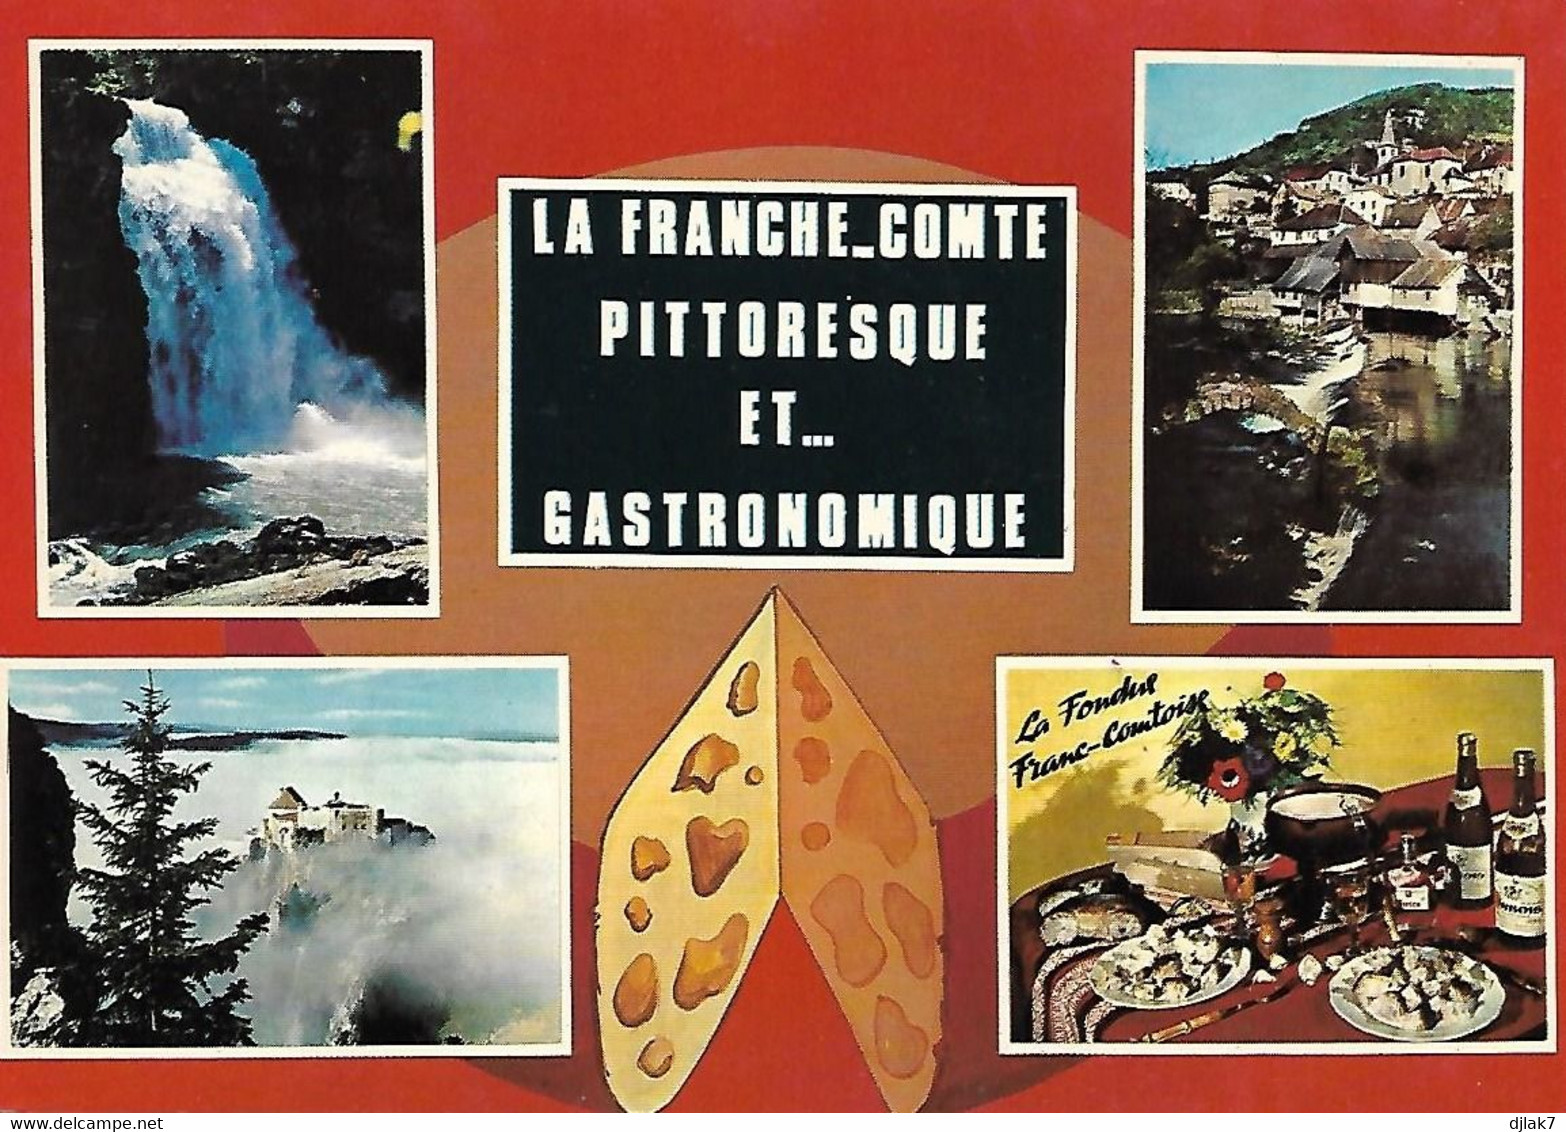 La Franche Comté Pittoresque Et Gastronomique Divers Aspects - Franche-Comté